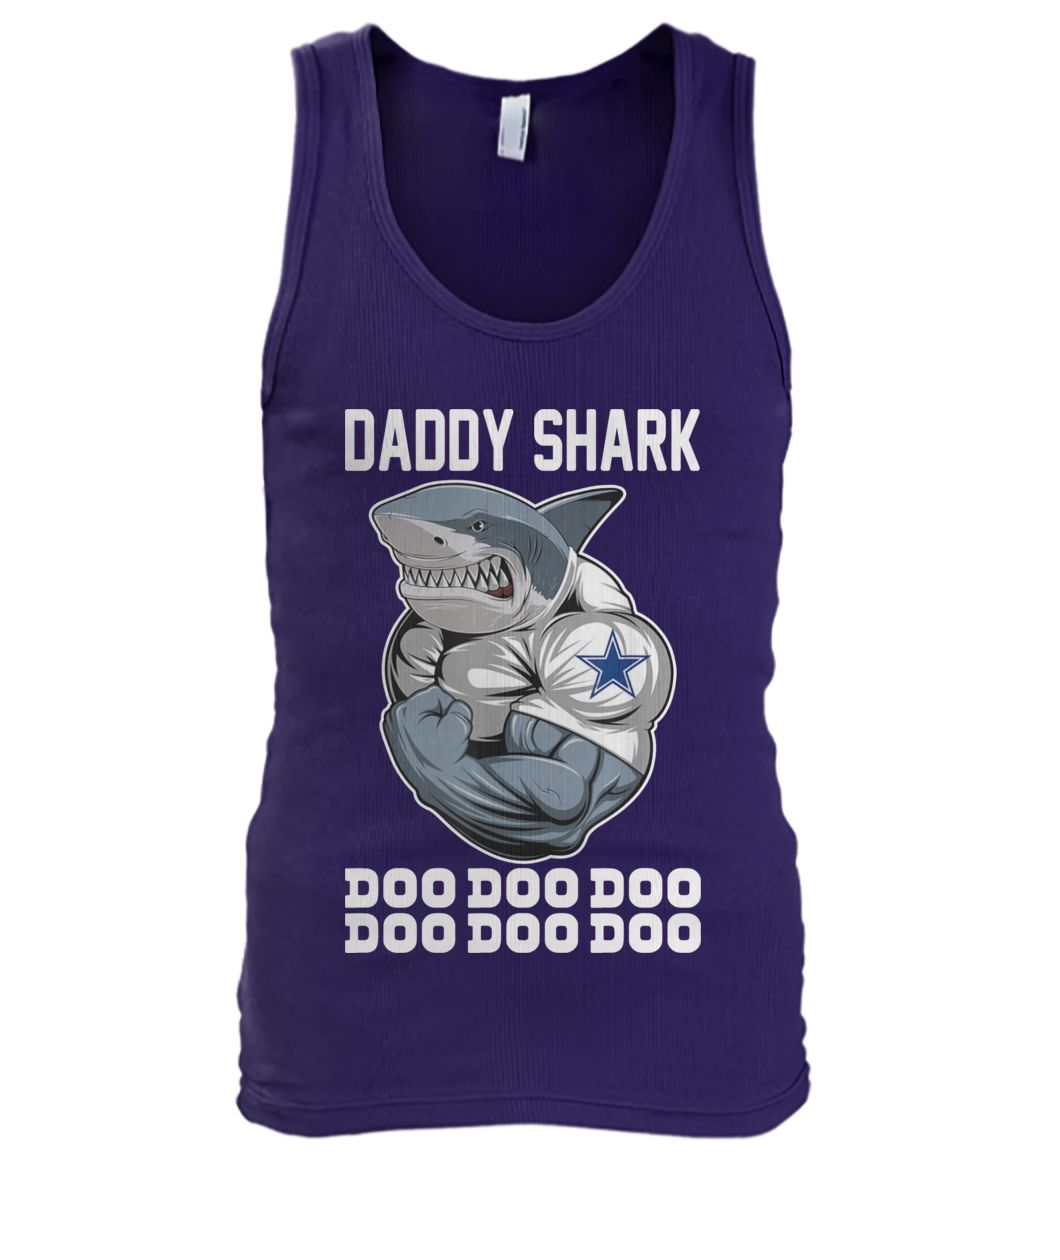 Daddy shark body building dallas cowboy doo doo doo men's tank top